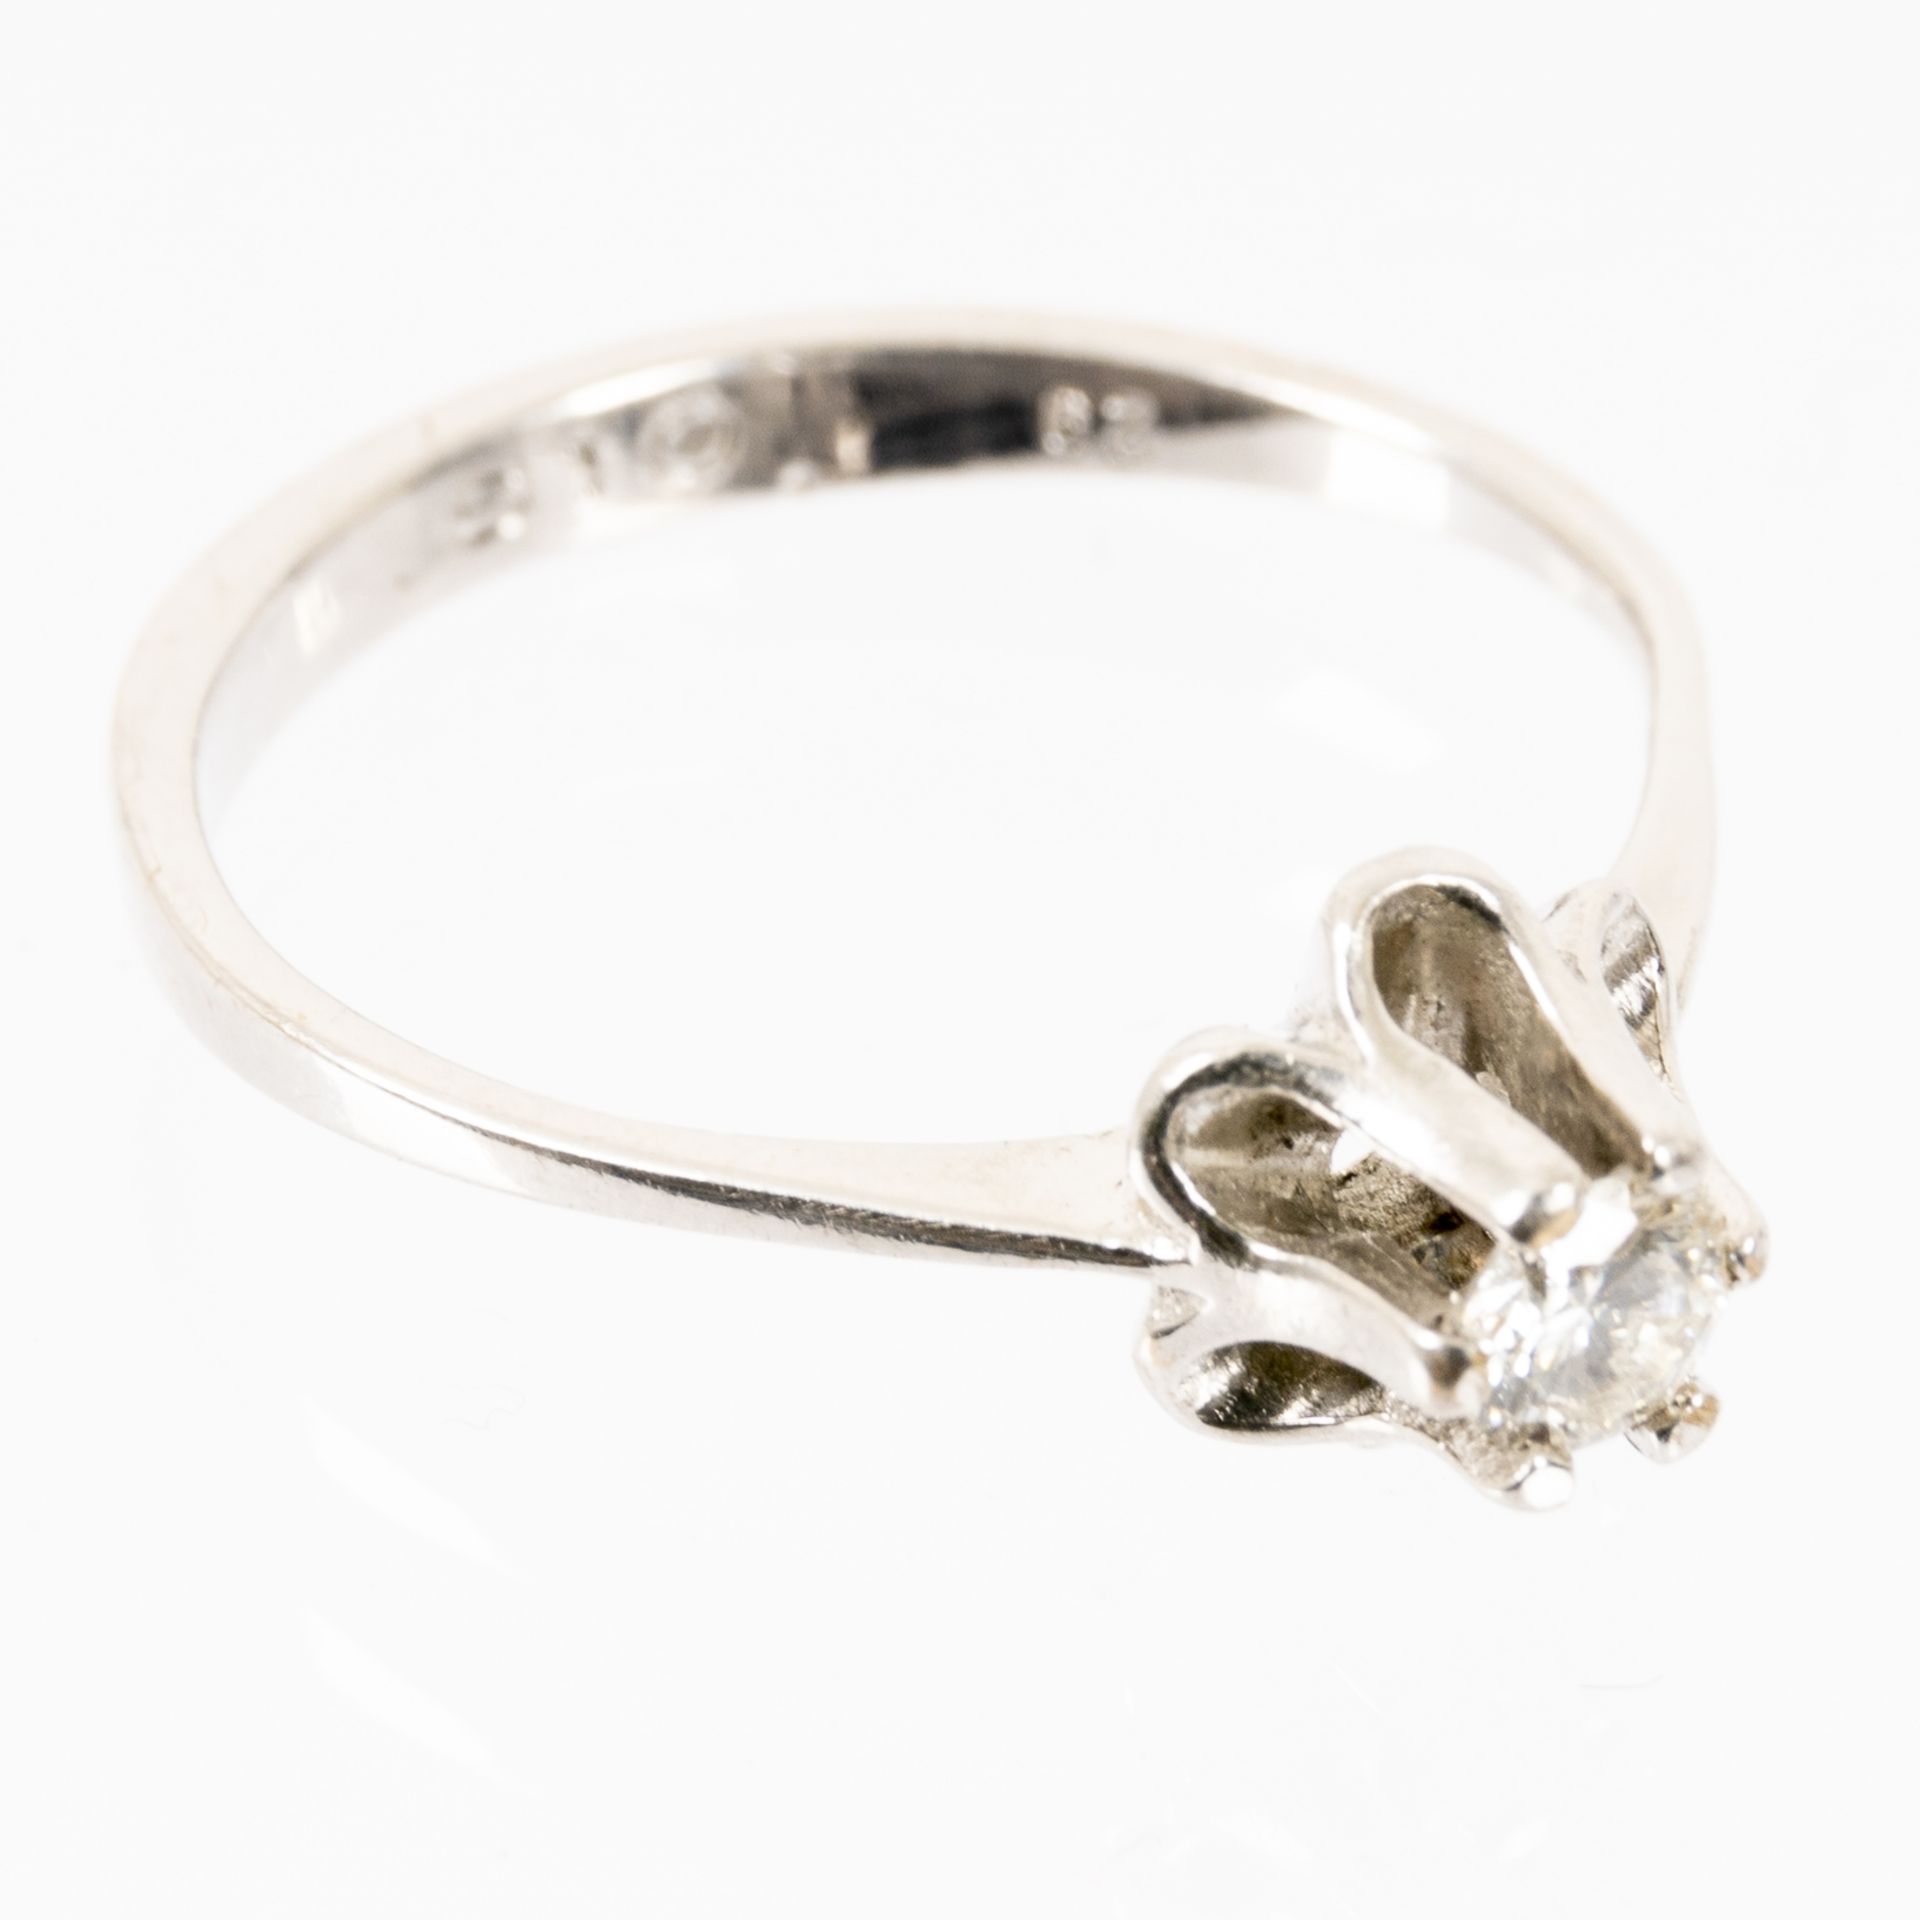 Brillant-Ring, 585er Weißgold mit Diamant im Brillantschliff von 0,19 ct besetzt. Farbe: weiß; Rein